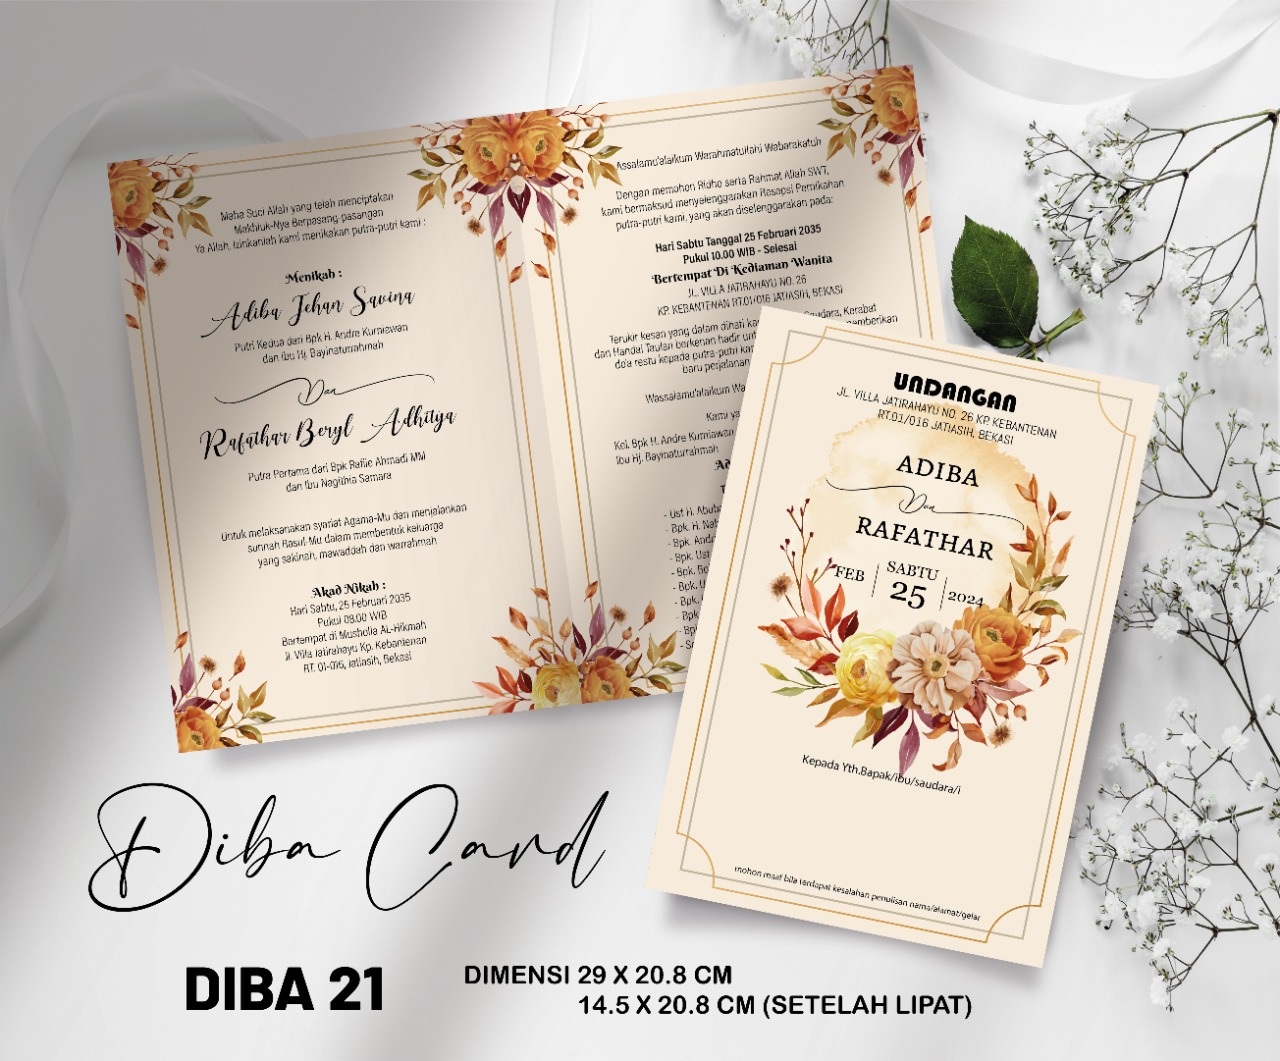 DIBA CARD 21 